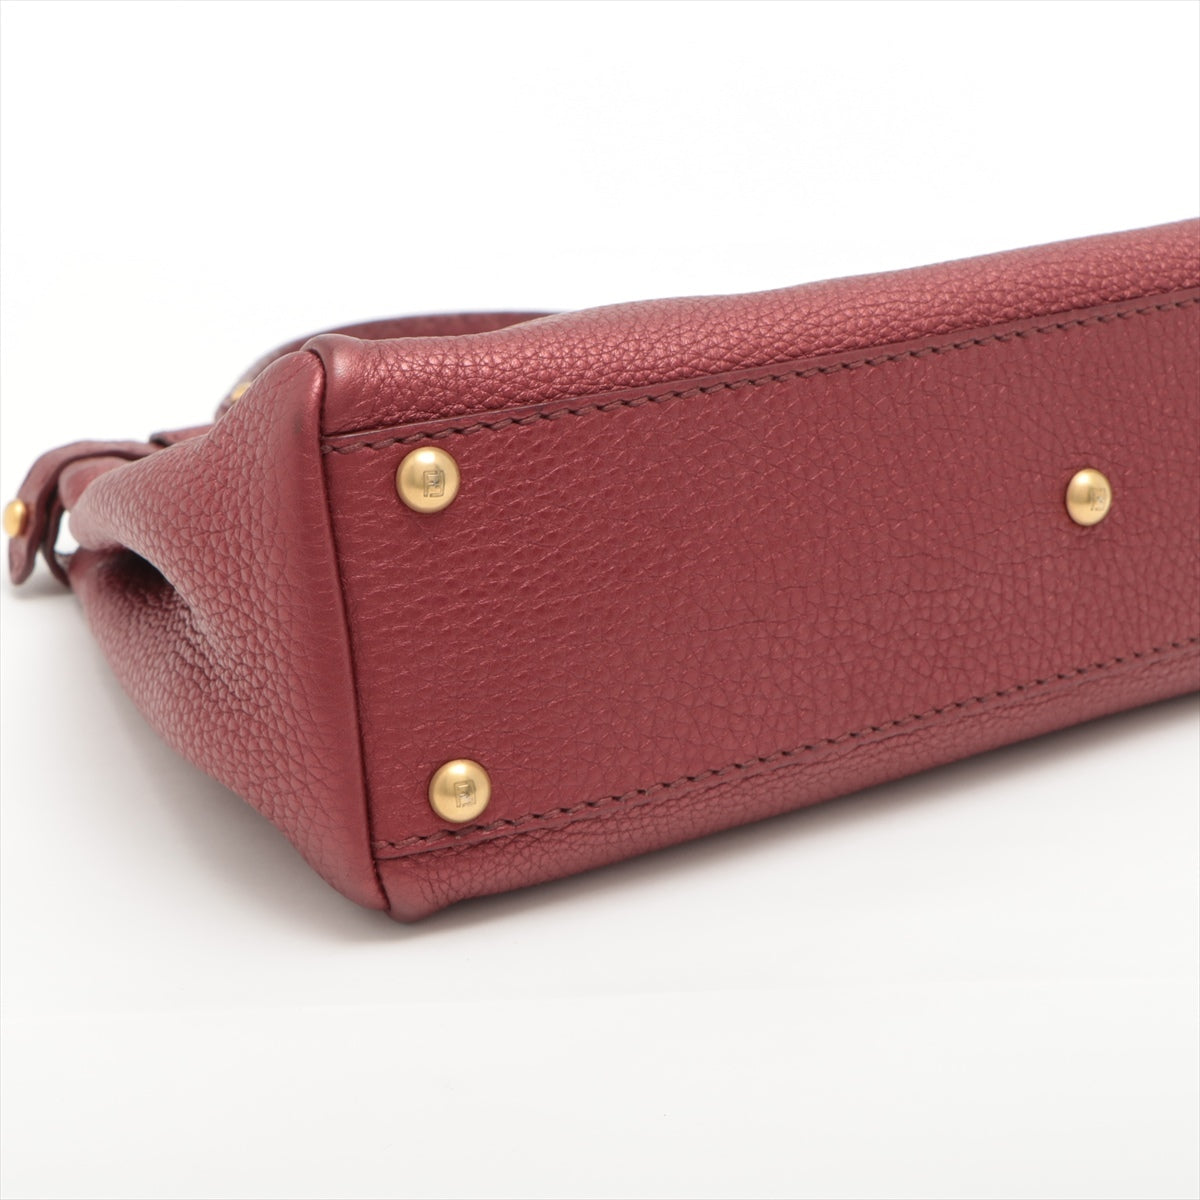 Fendi Peek-a-boo Selleria Leather Hand bag Red 8BN226